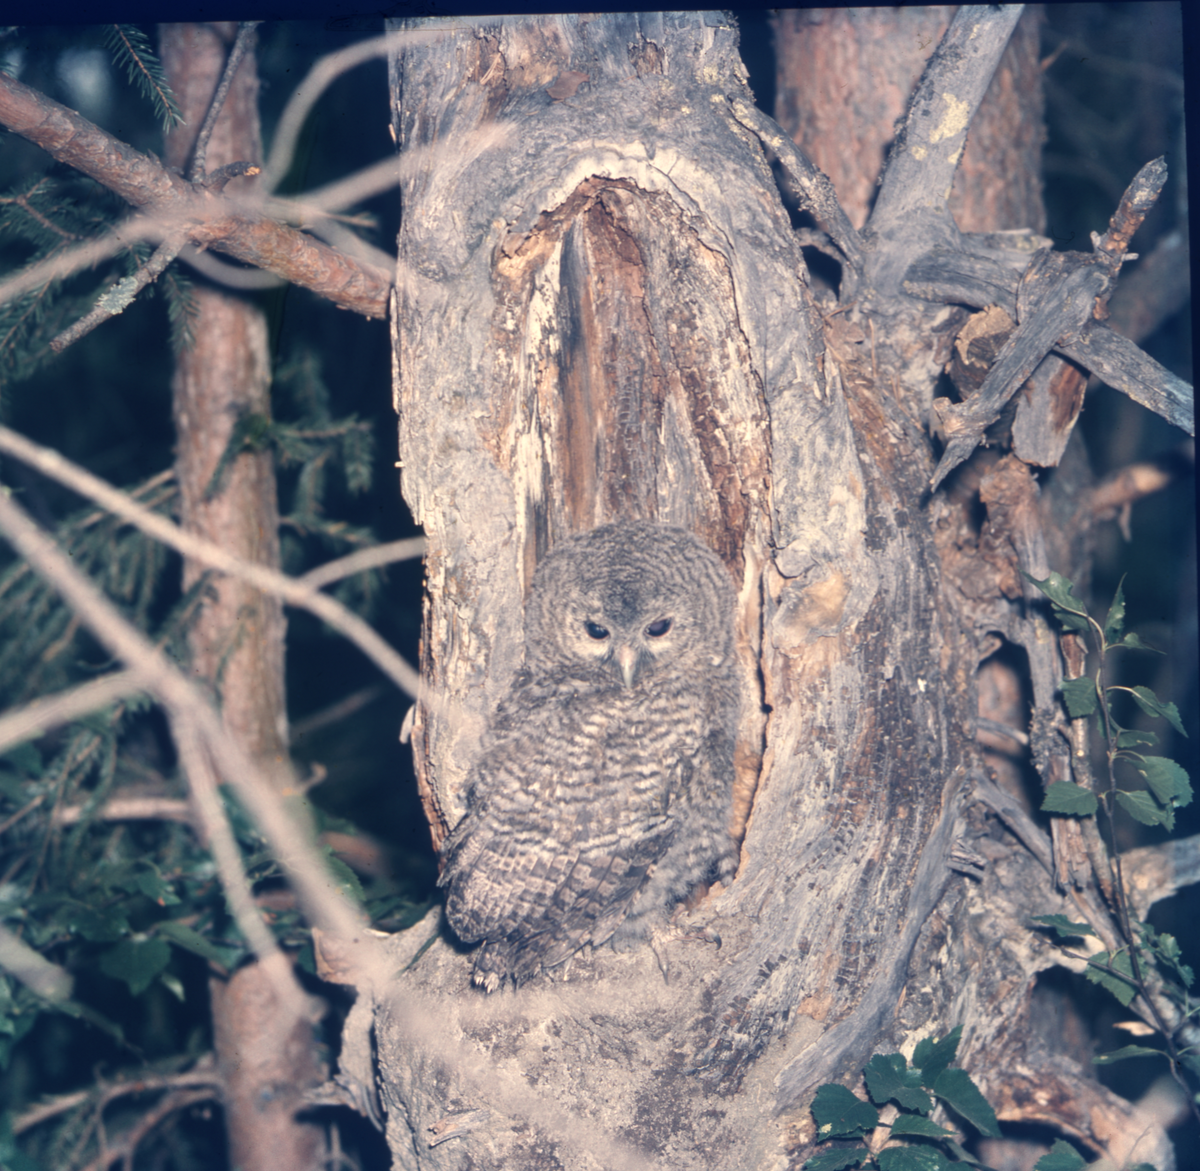 En uggla sitter i ett träd där den smälter in i omgivningen.